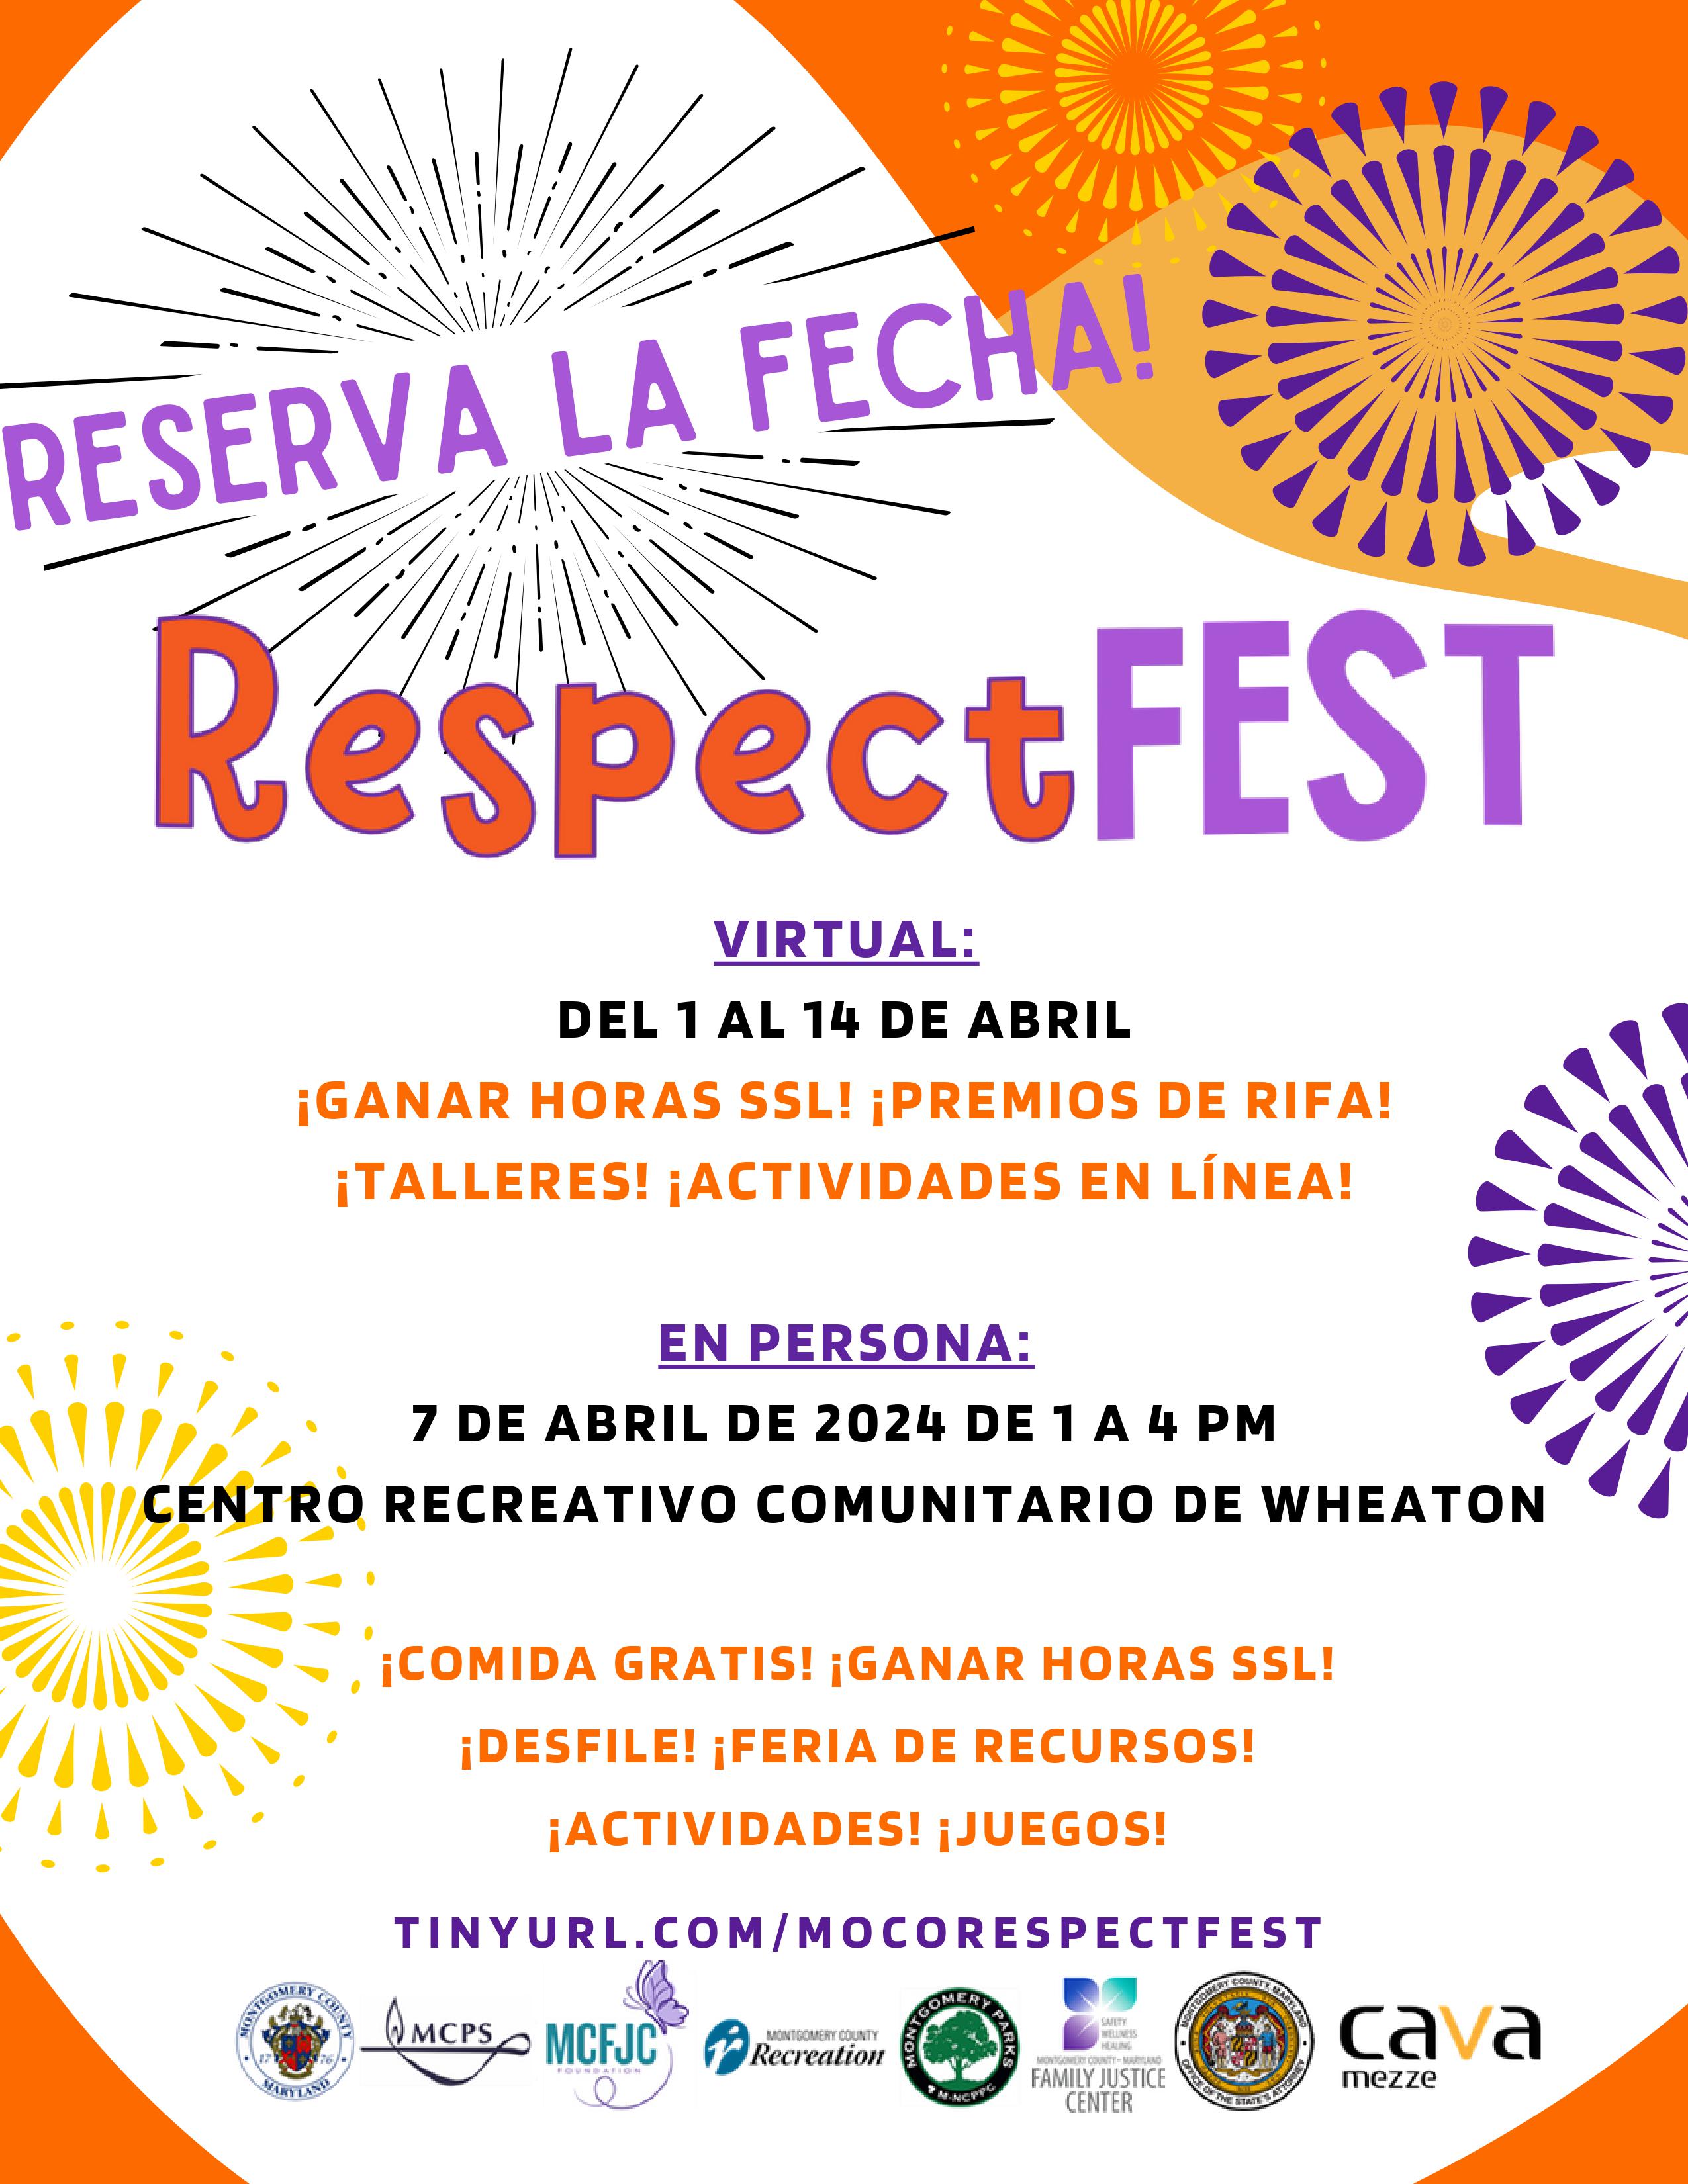 Respect Fest Spanish